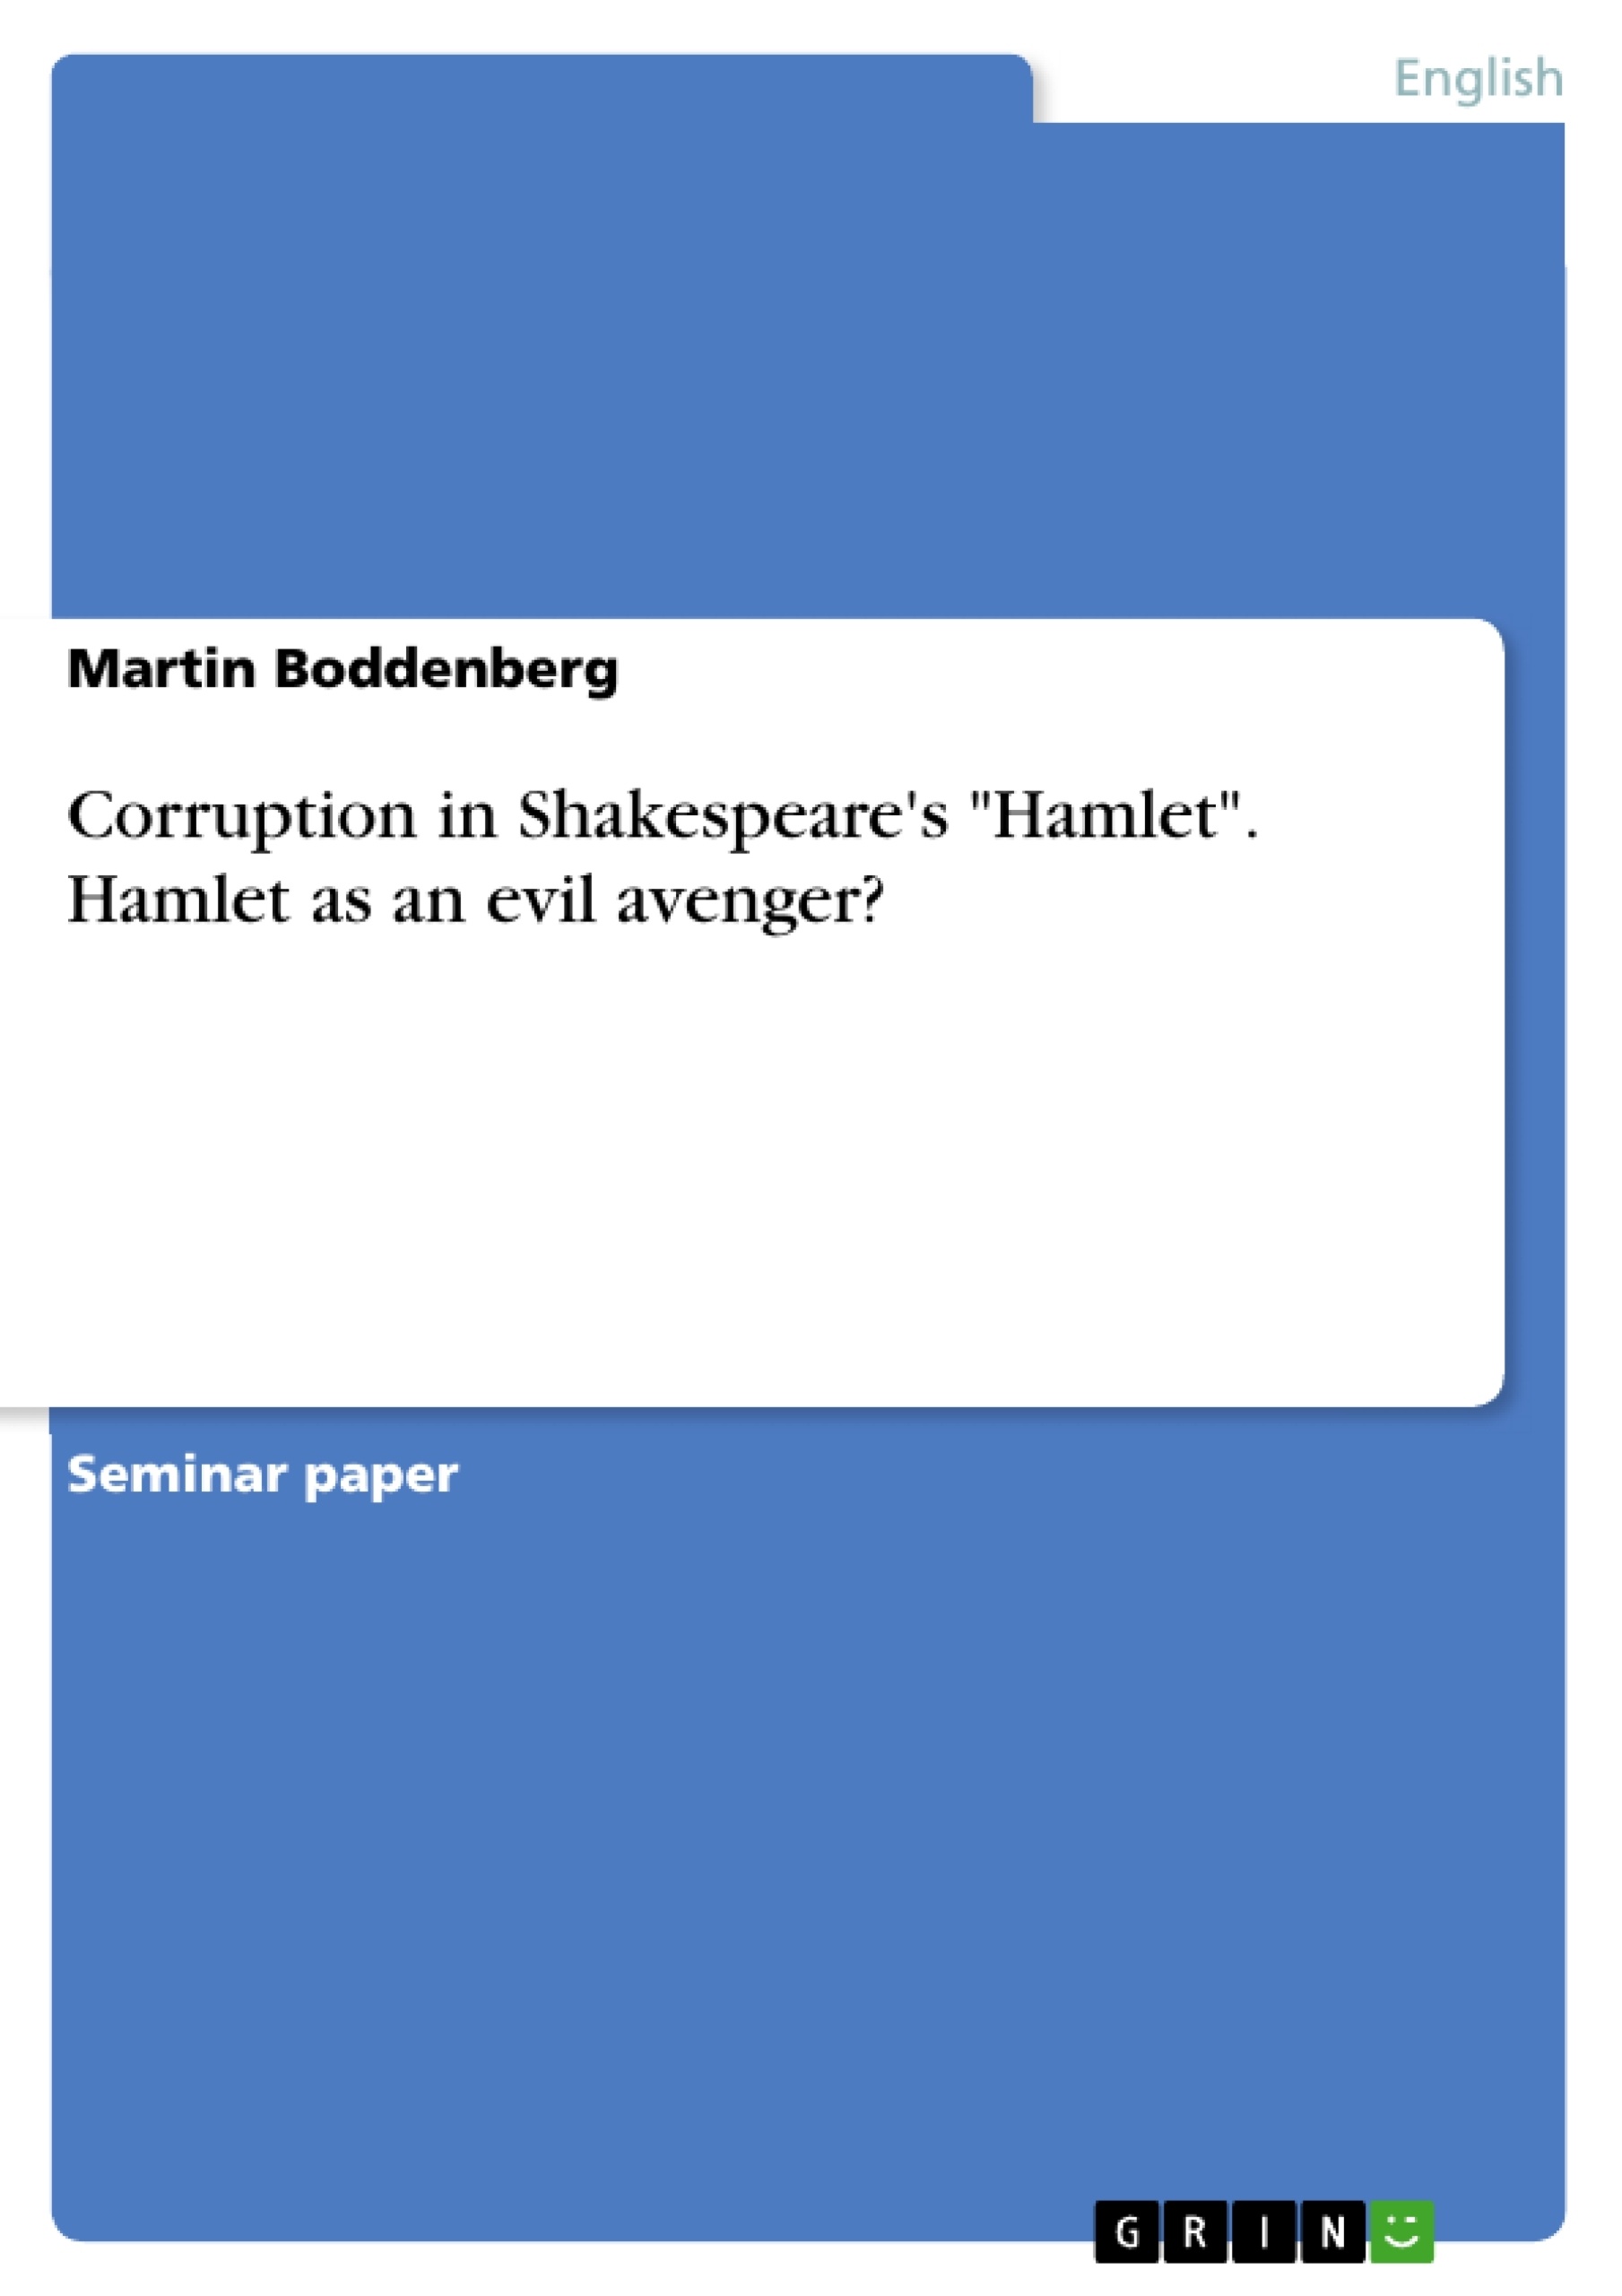 avenger? as Shakespeare\'s - GRIN evil Hamlet Corruption in an \